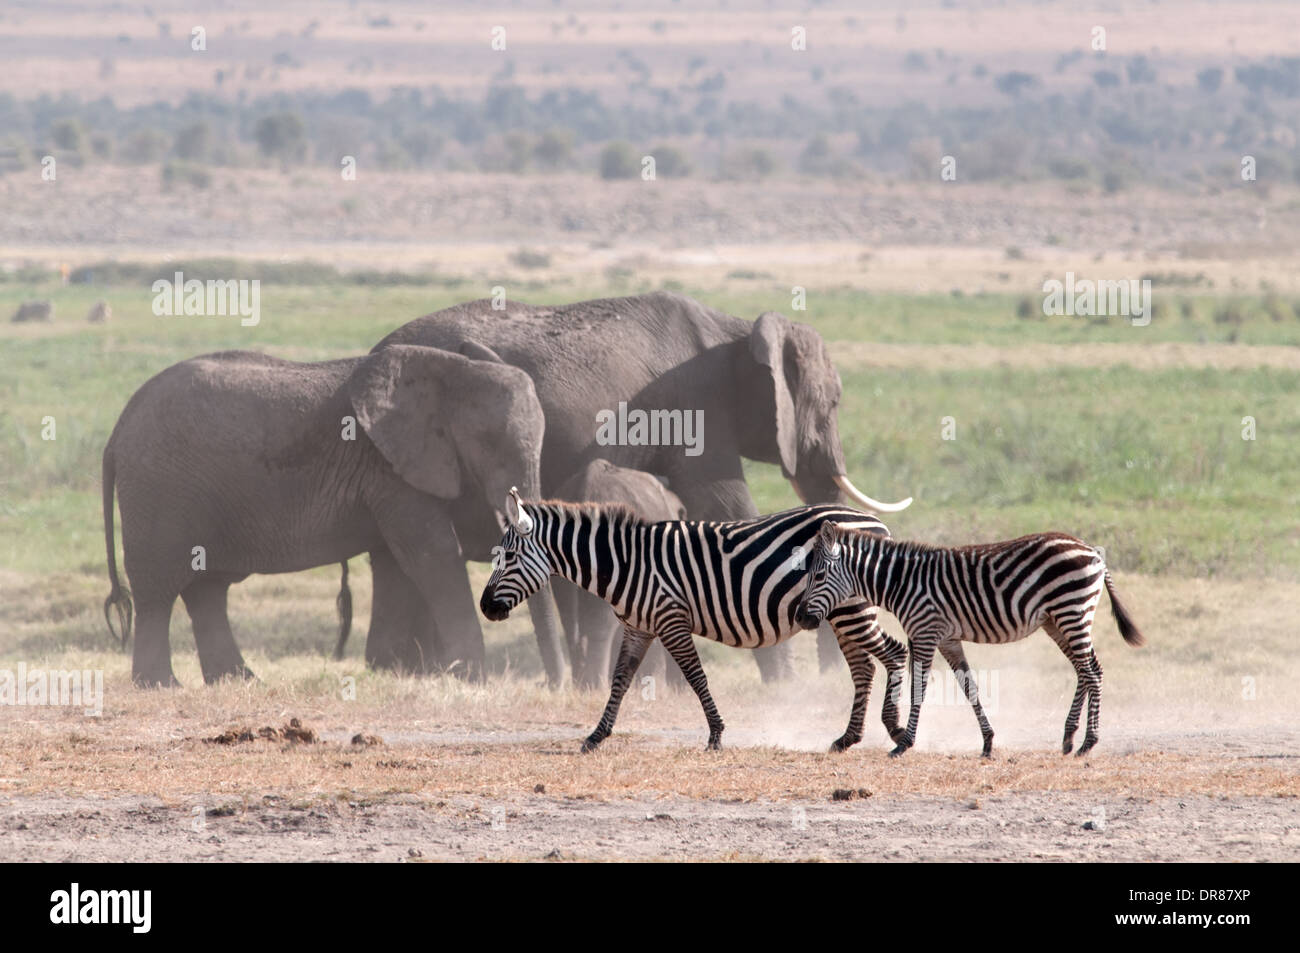 La moule commune et des éléphants dans le Parc national Amboseli Kenya Afrique de l'Est Banque D'Images